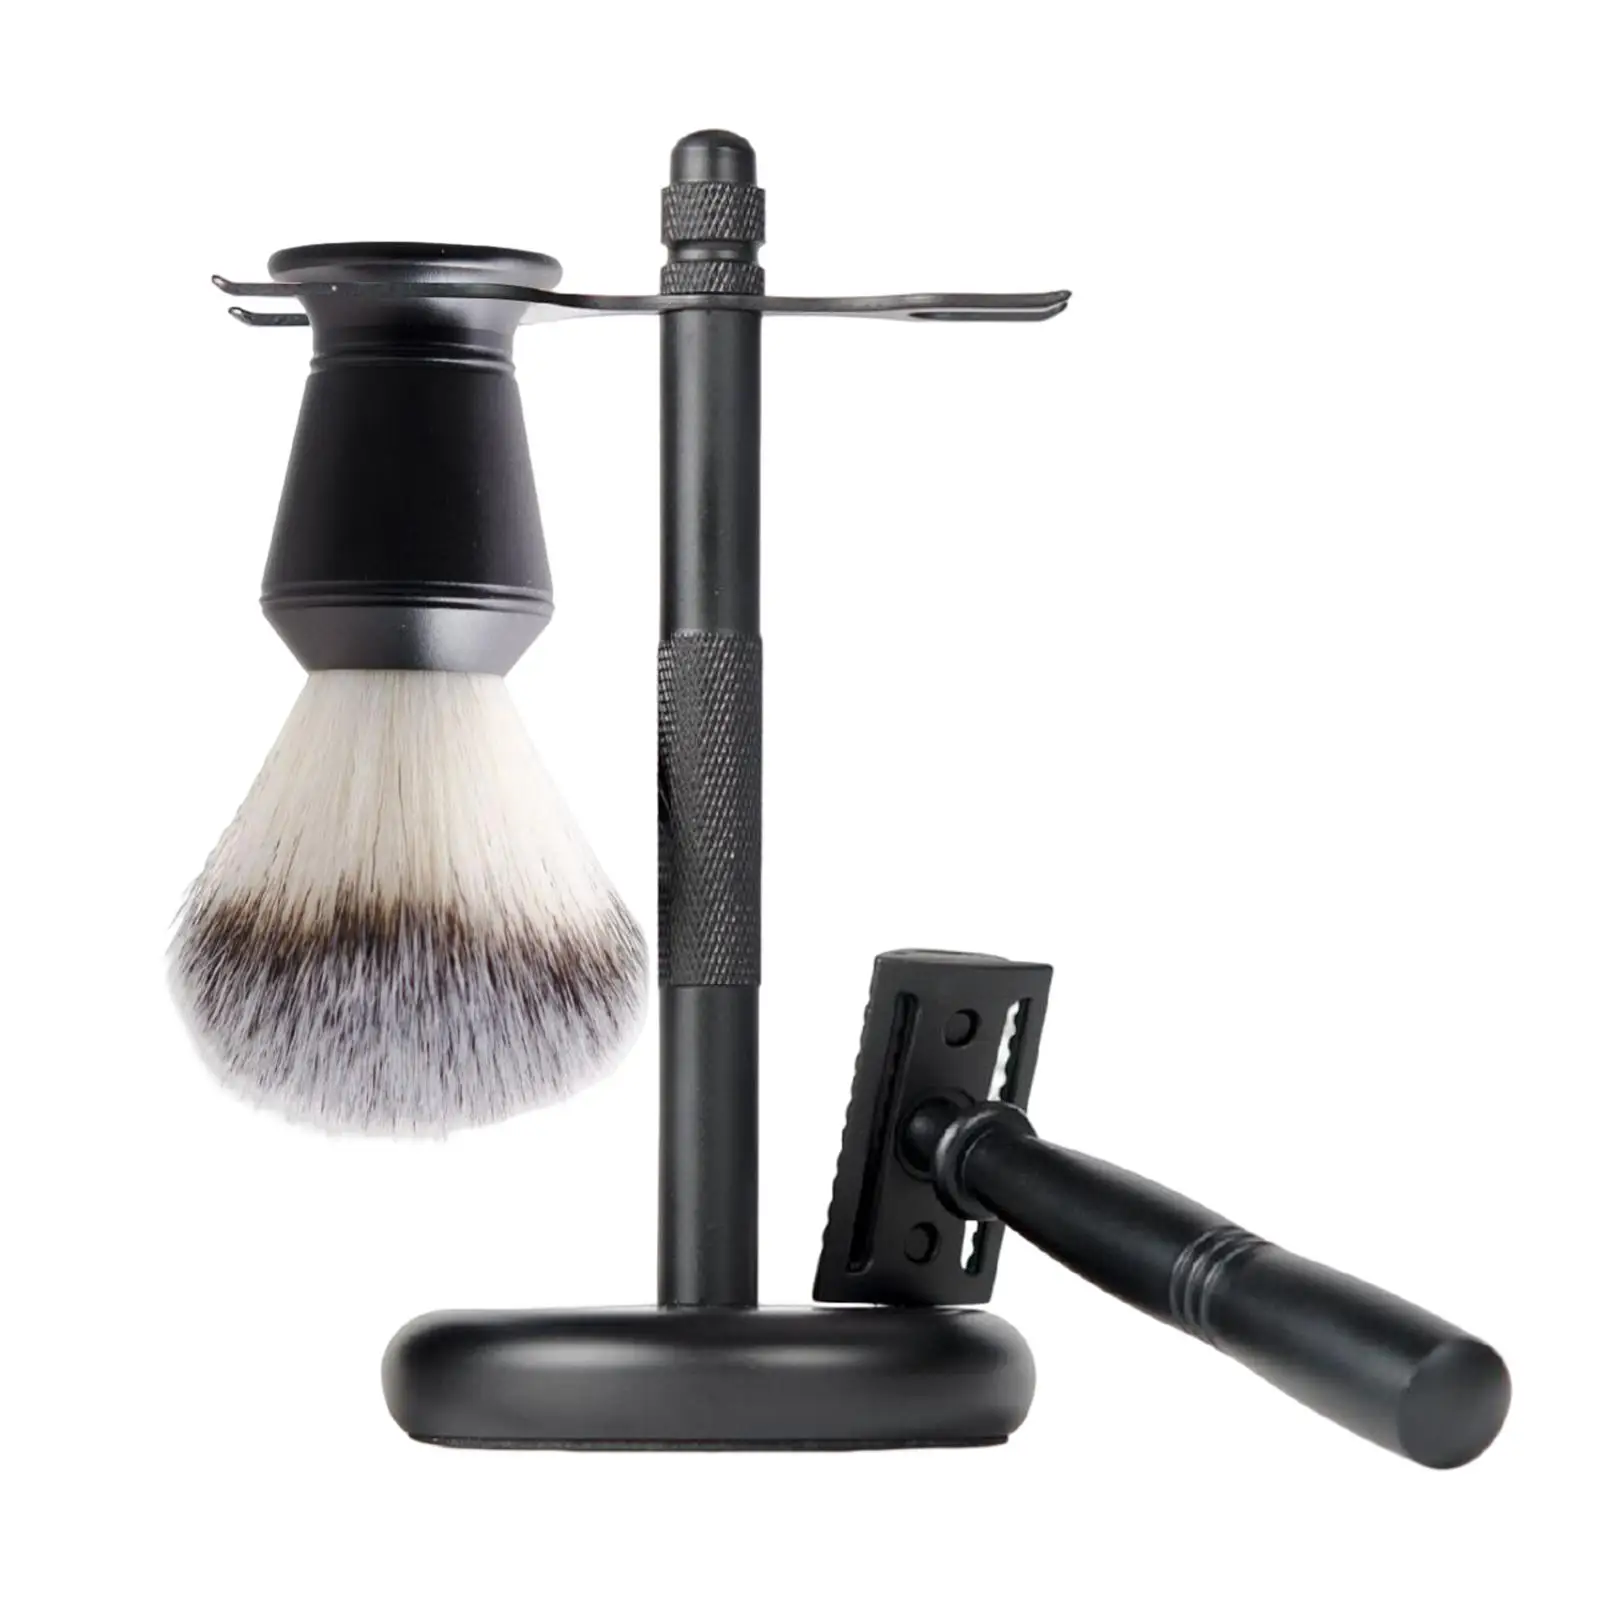 3Pcs Shaving Kit Black Color Elegant Gift Set for Men Dad Boyfriend Husband